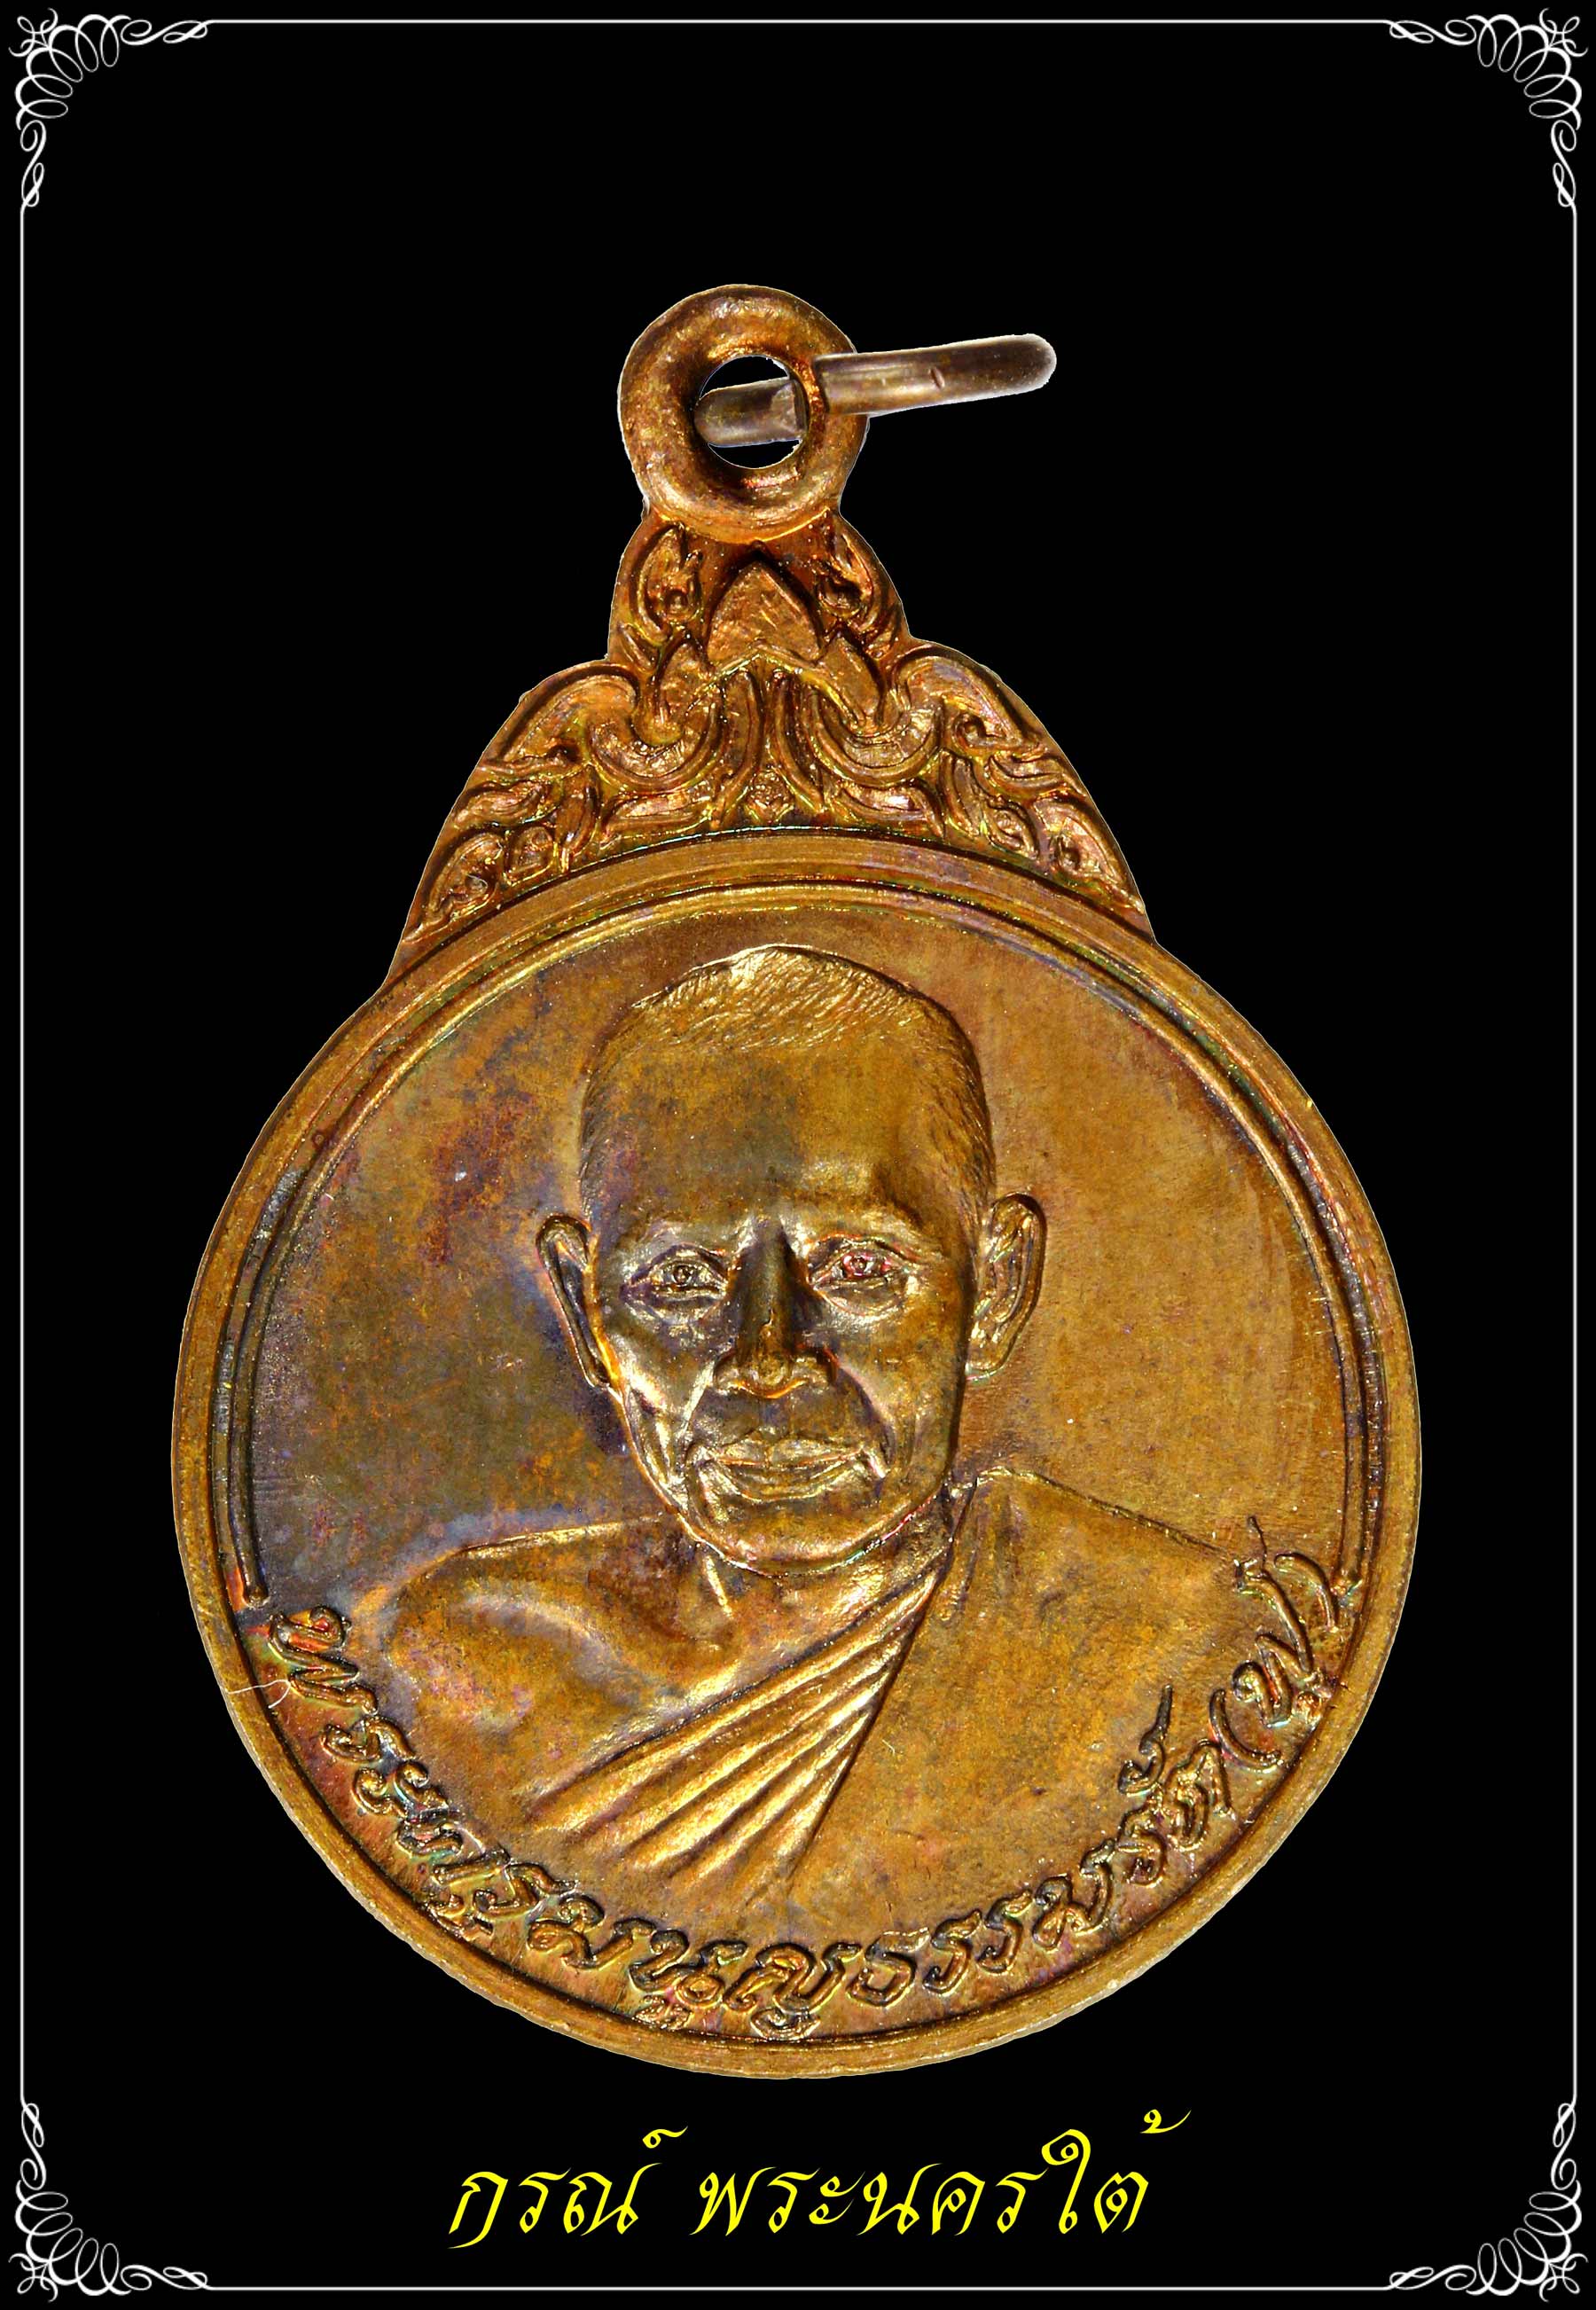 เหรียญหลวงพ่อฟู วัดบางสมัค รุ่นแรก ปี ๒๕๒๓ เนื้อทองแดง